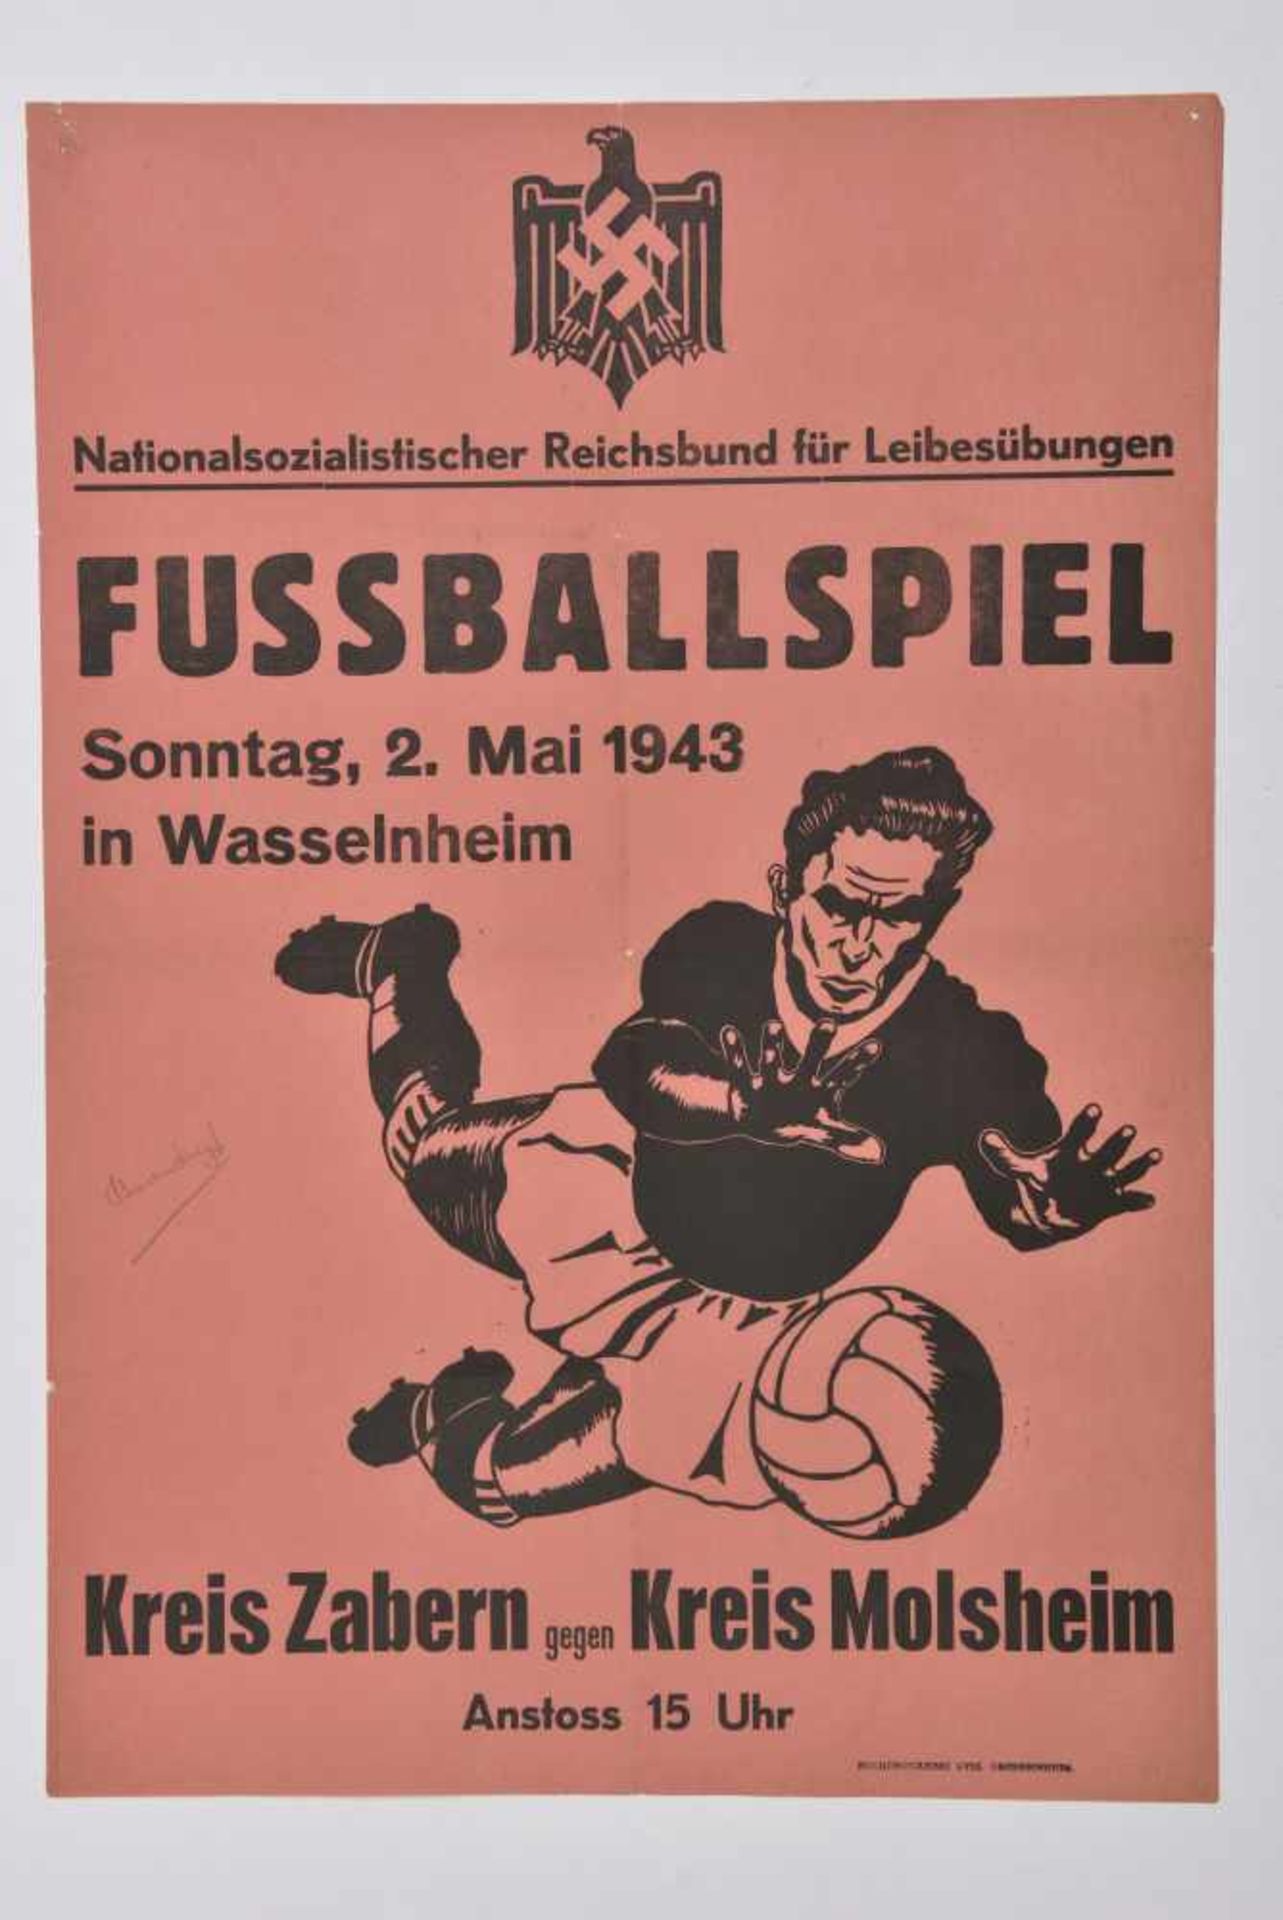 Affiche de propagande allemande pour l'Alsace annonçant un match de footbal entre le club de